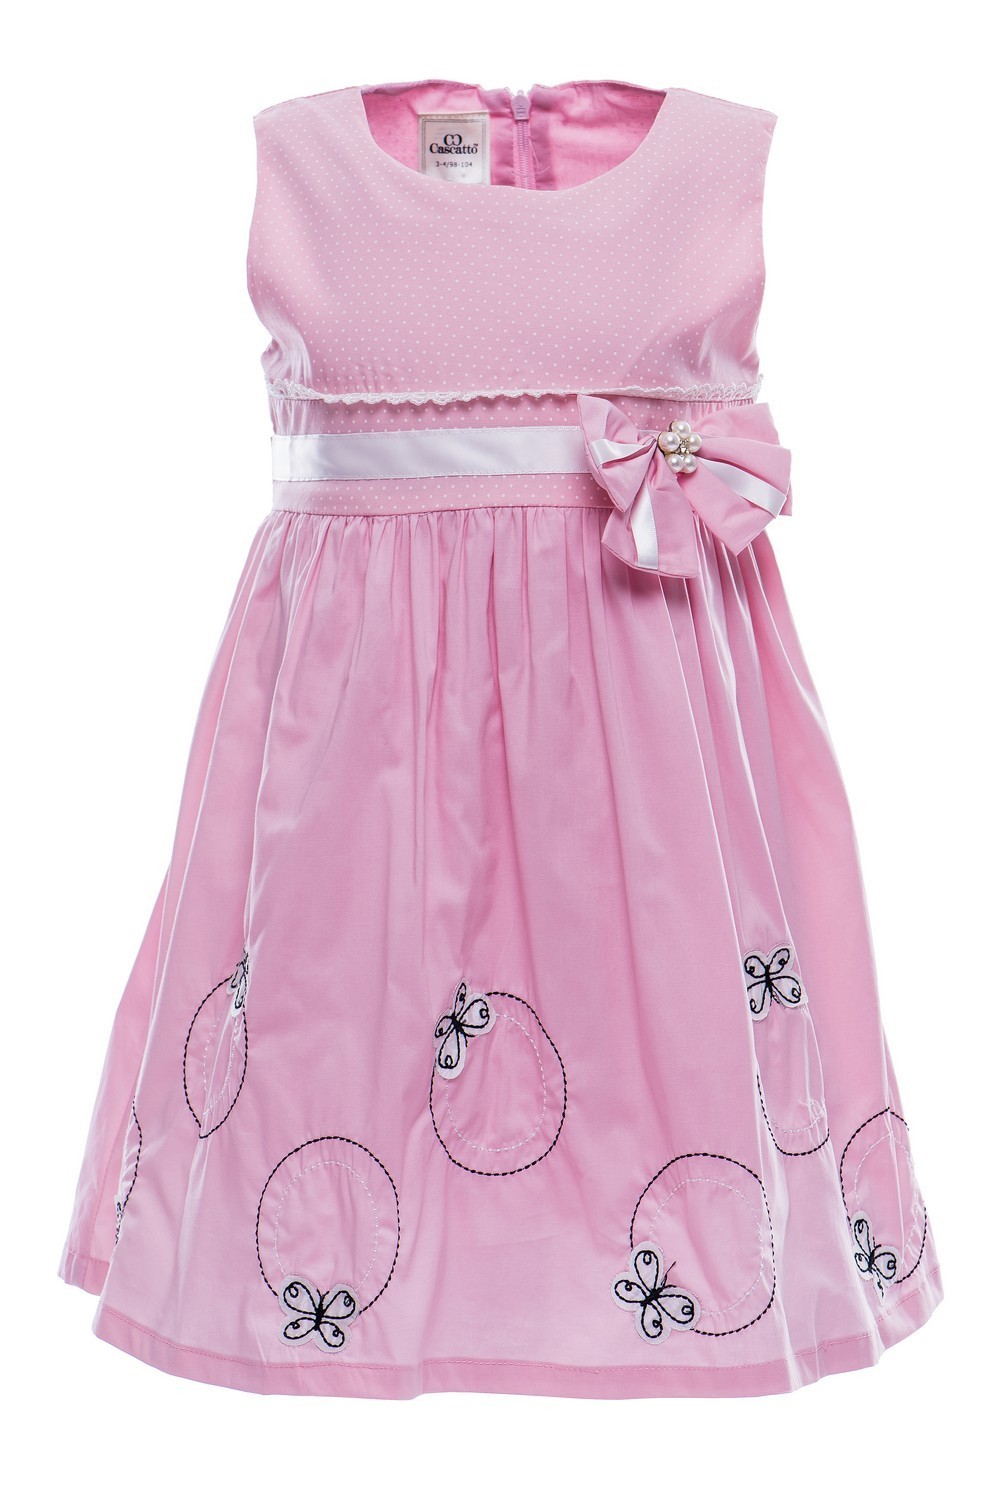 Купить Платье для девочки PL79 розовый